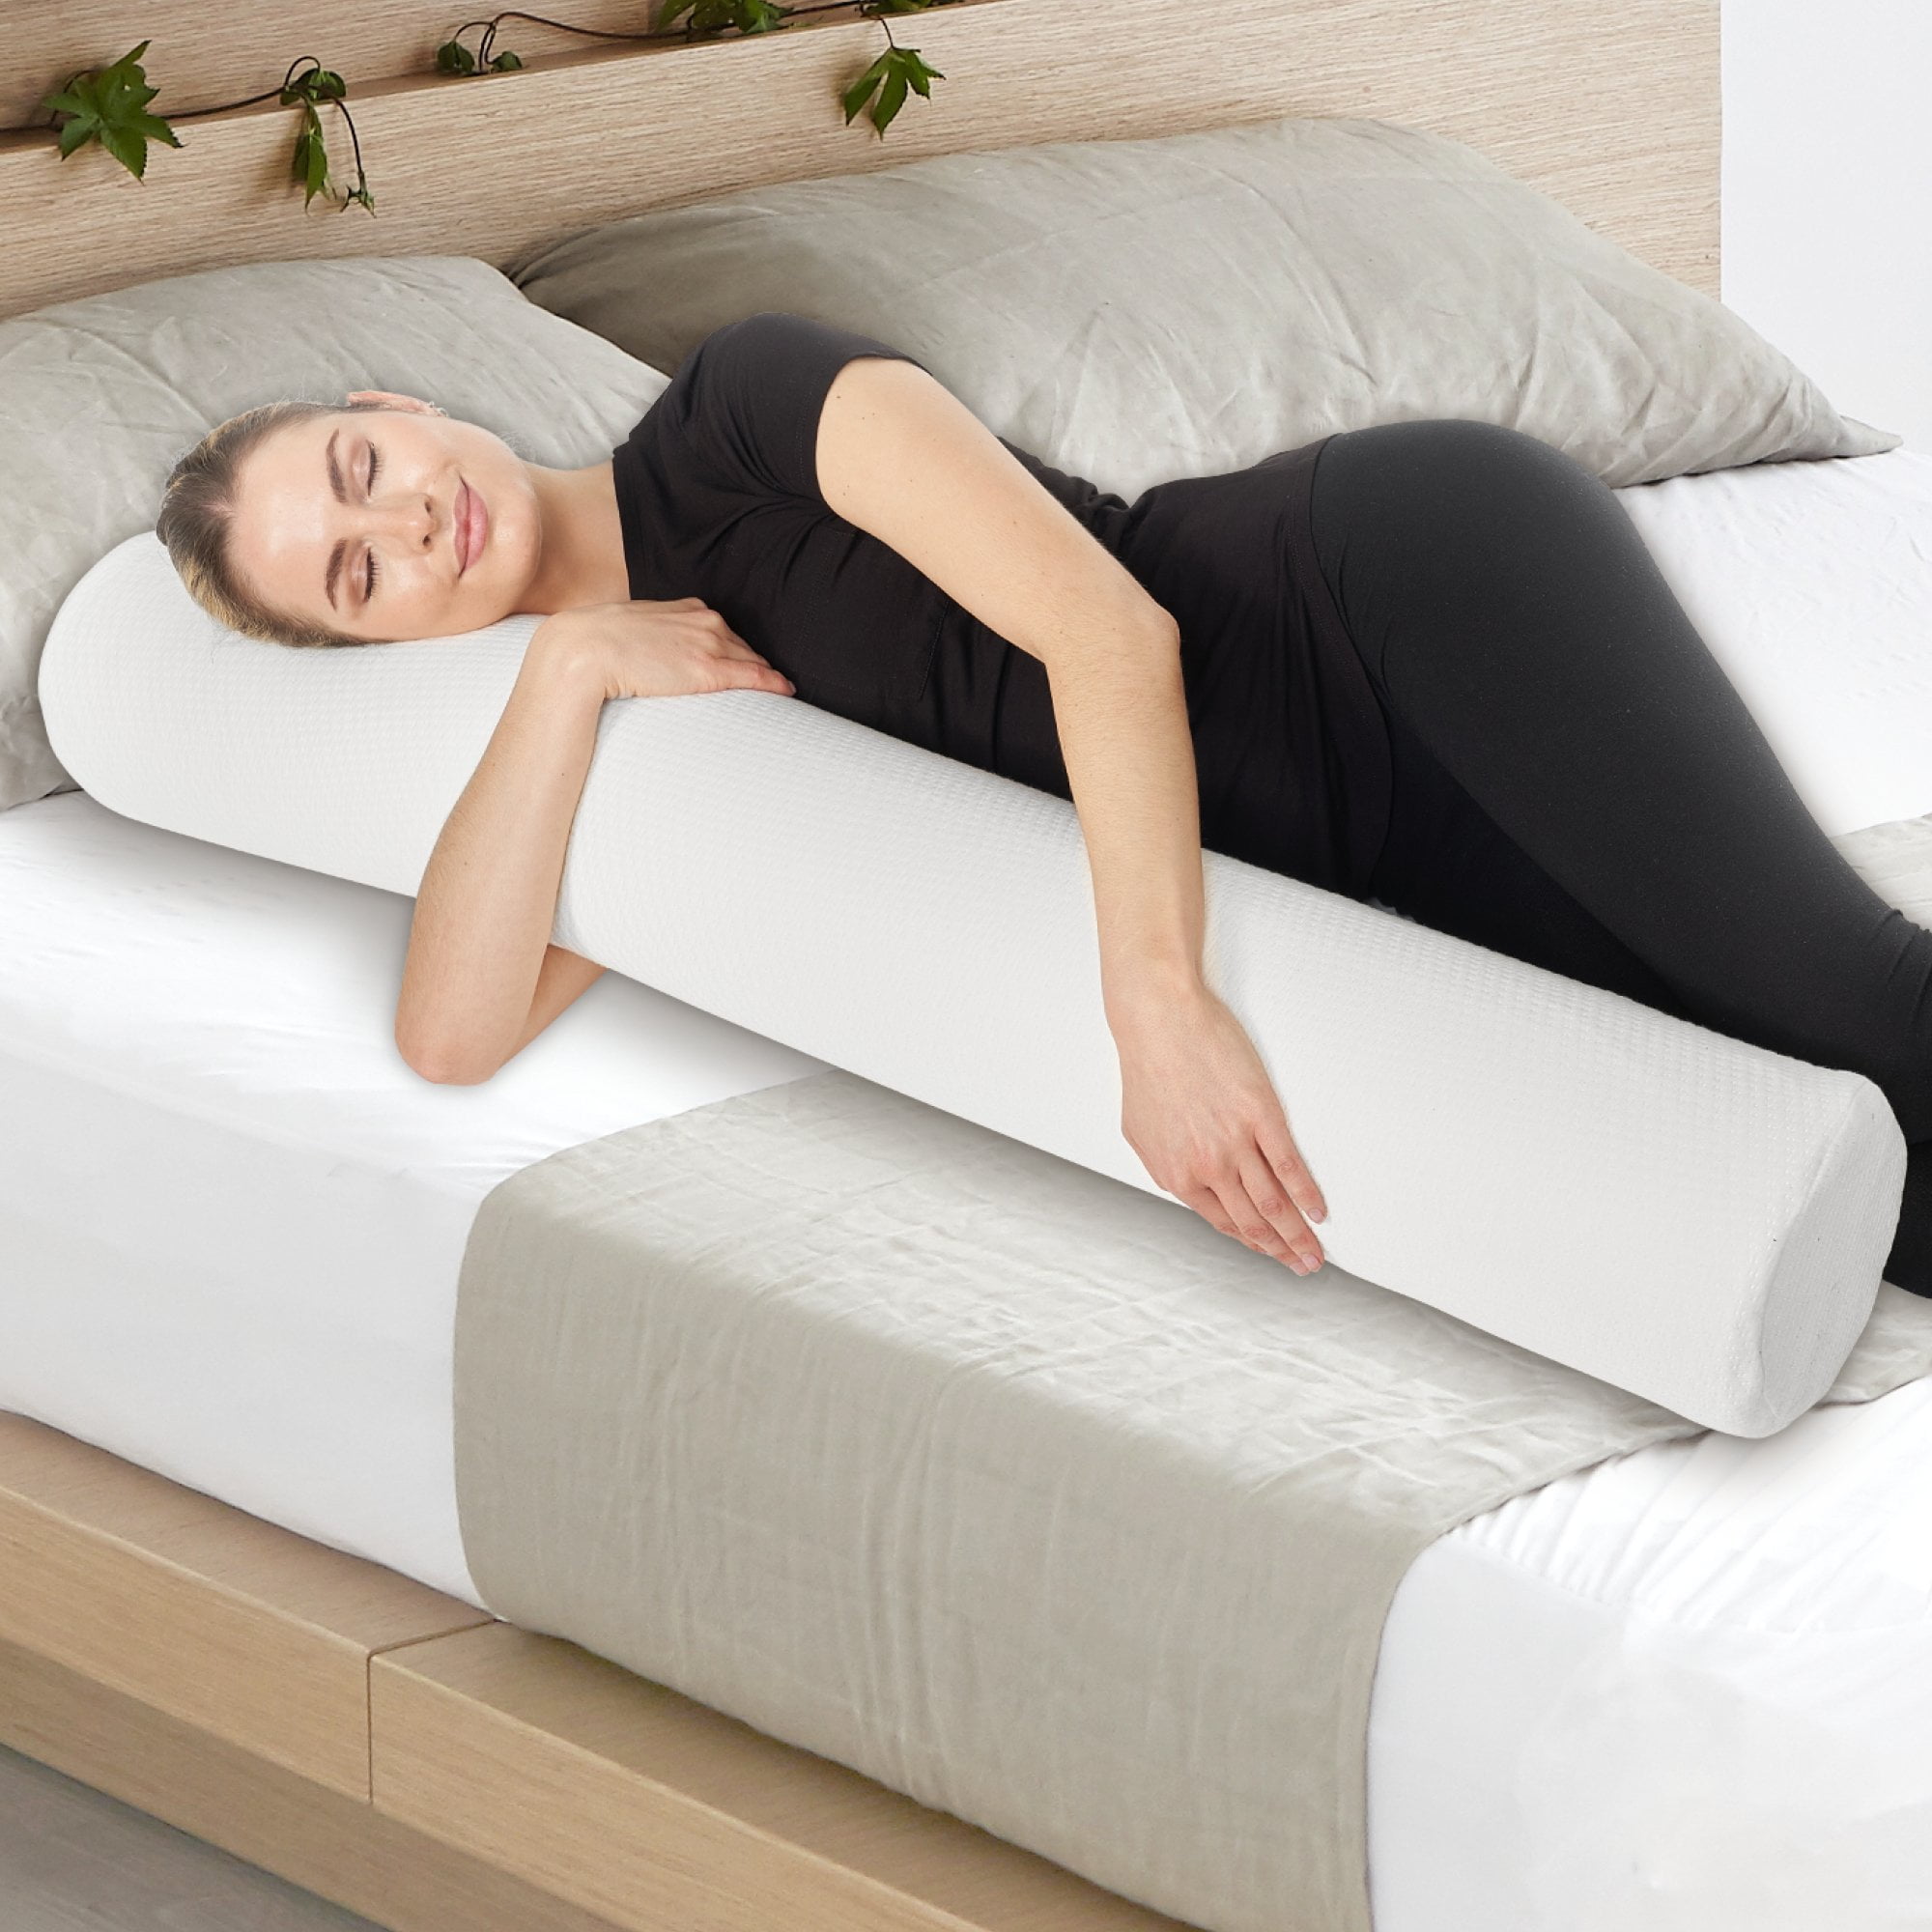 Bolster Pillow Long Body Pillow Comfort Nursing Neck Support Cushion 3'4'5'6FT 